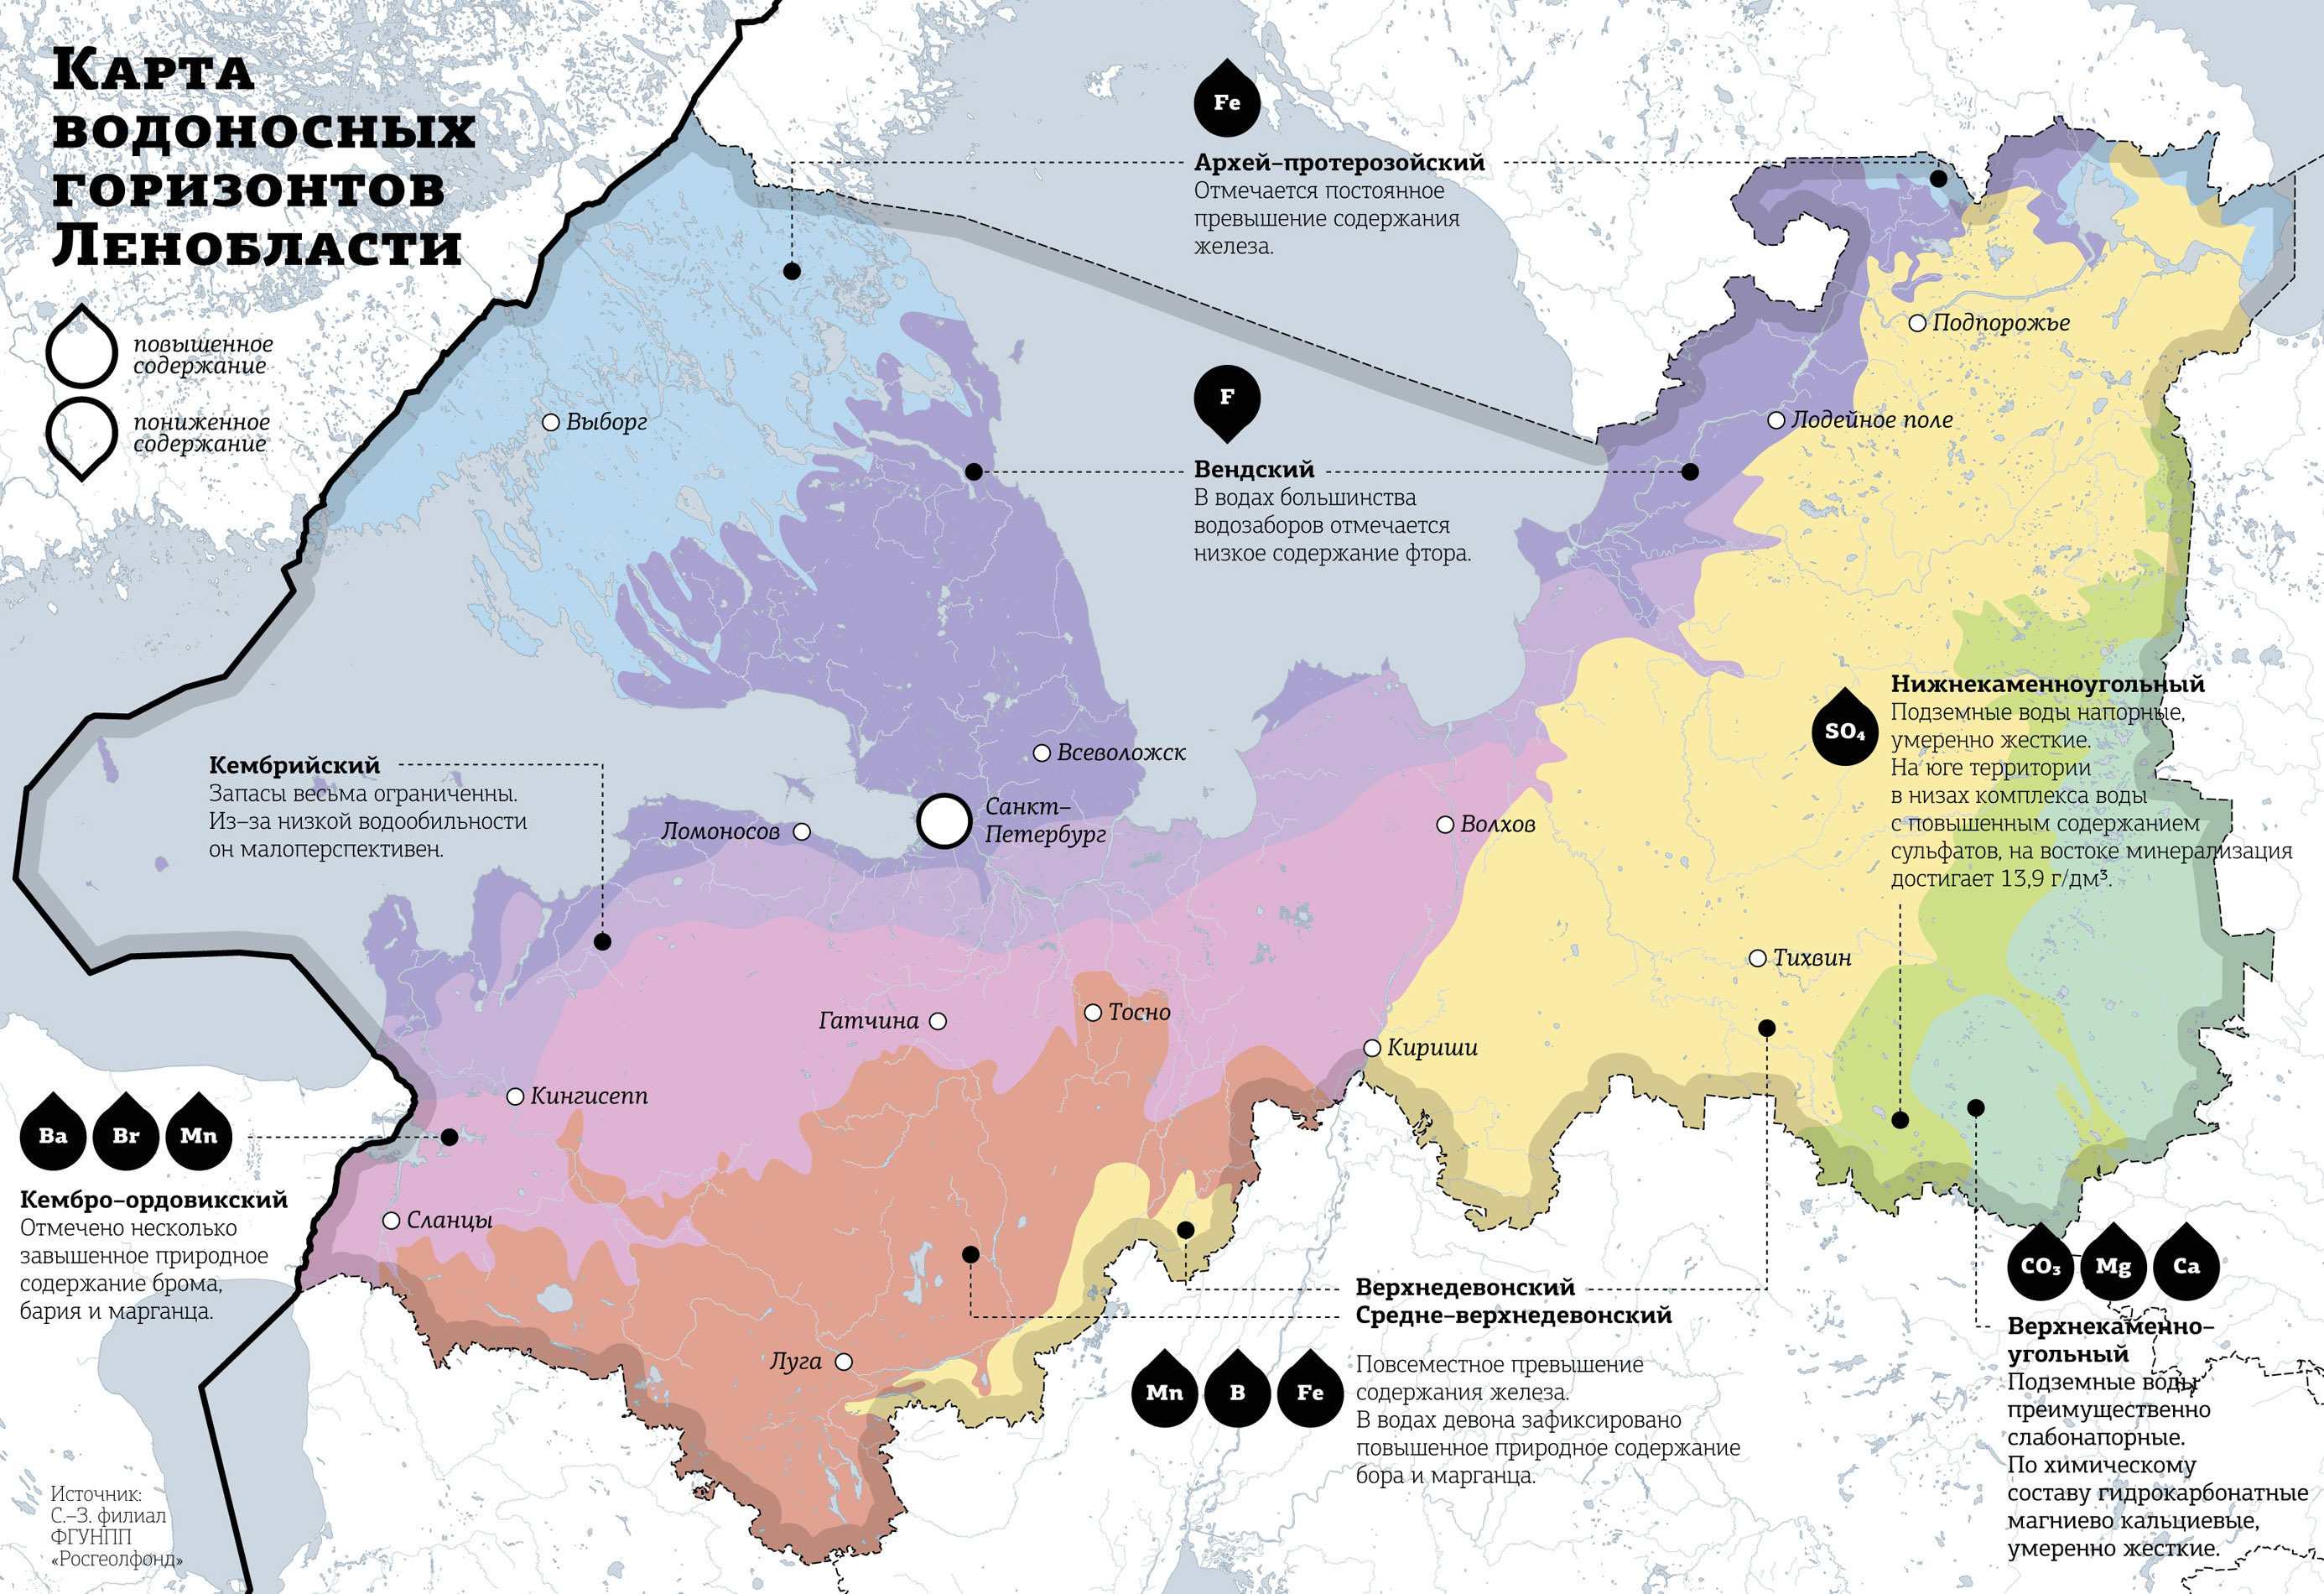 Гидрогеологическая характеристика – насколько это важно. Карта водоносных горизонтов Ленинградской области